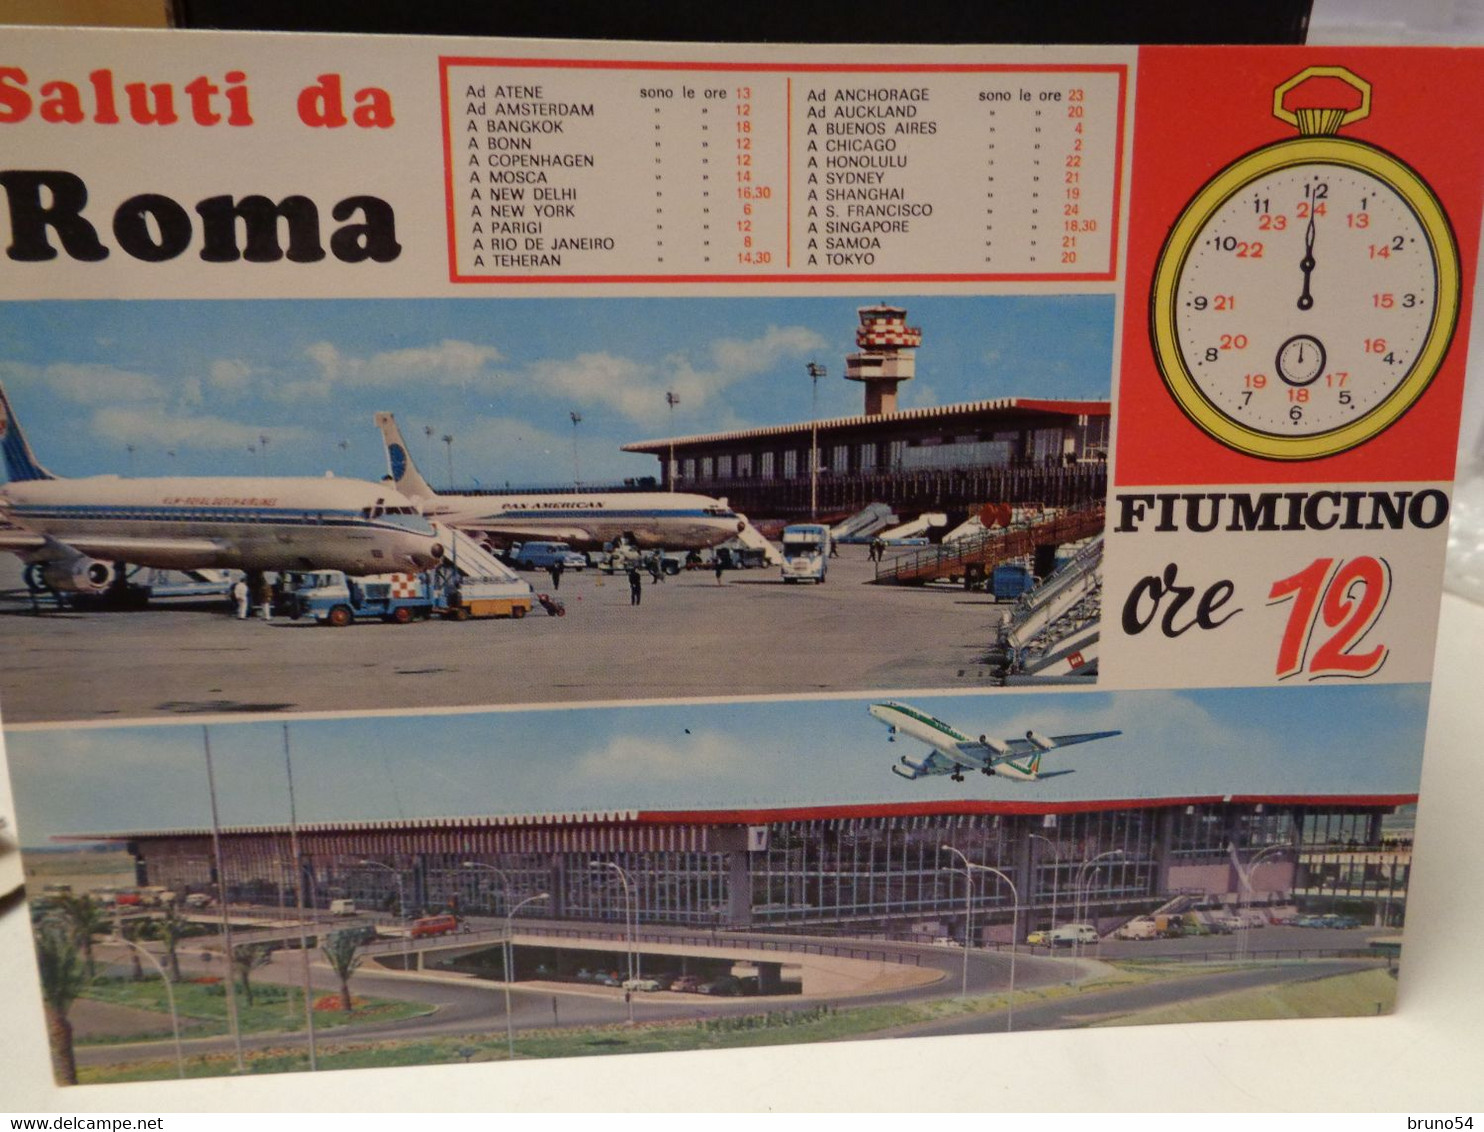 Cartolina Saluti Da Roma Fiumicino Ore 12 , Tabella Delle Destinazioni , Aere KLM E Alitalia - Transportes